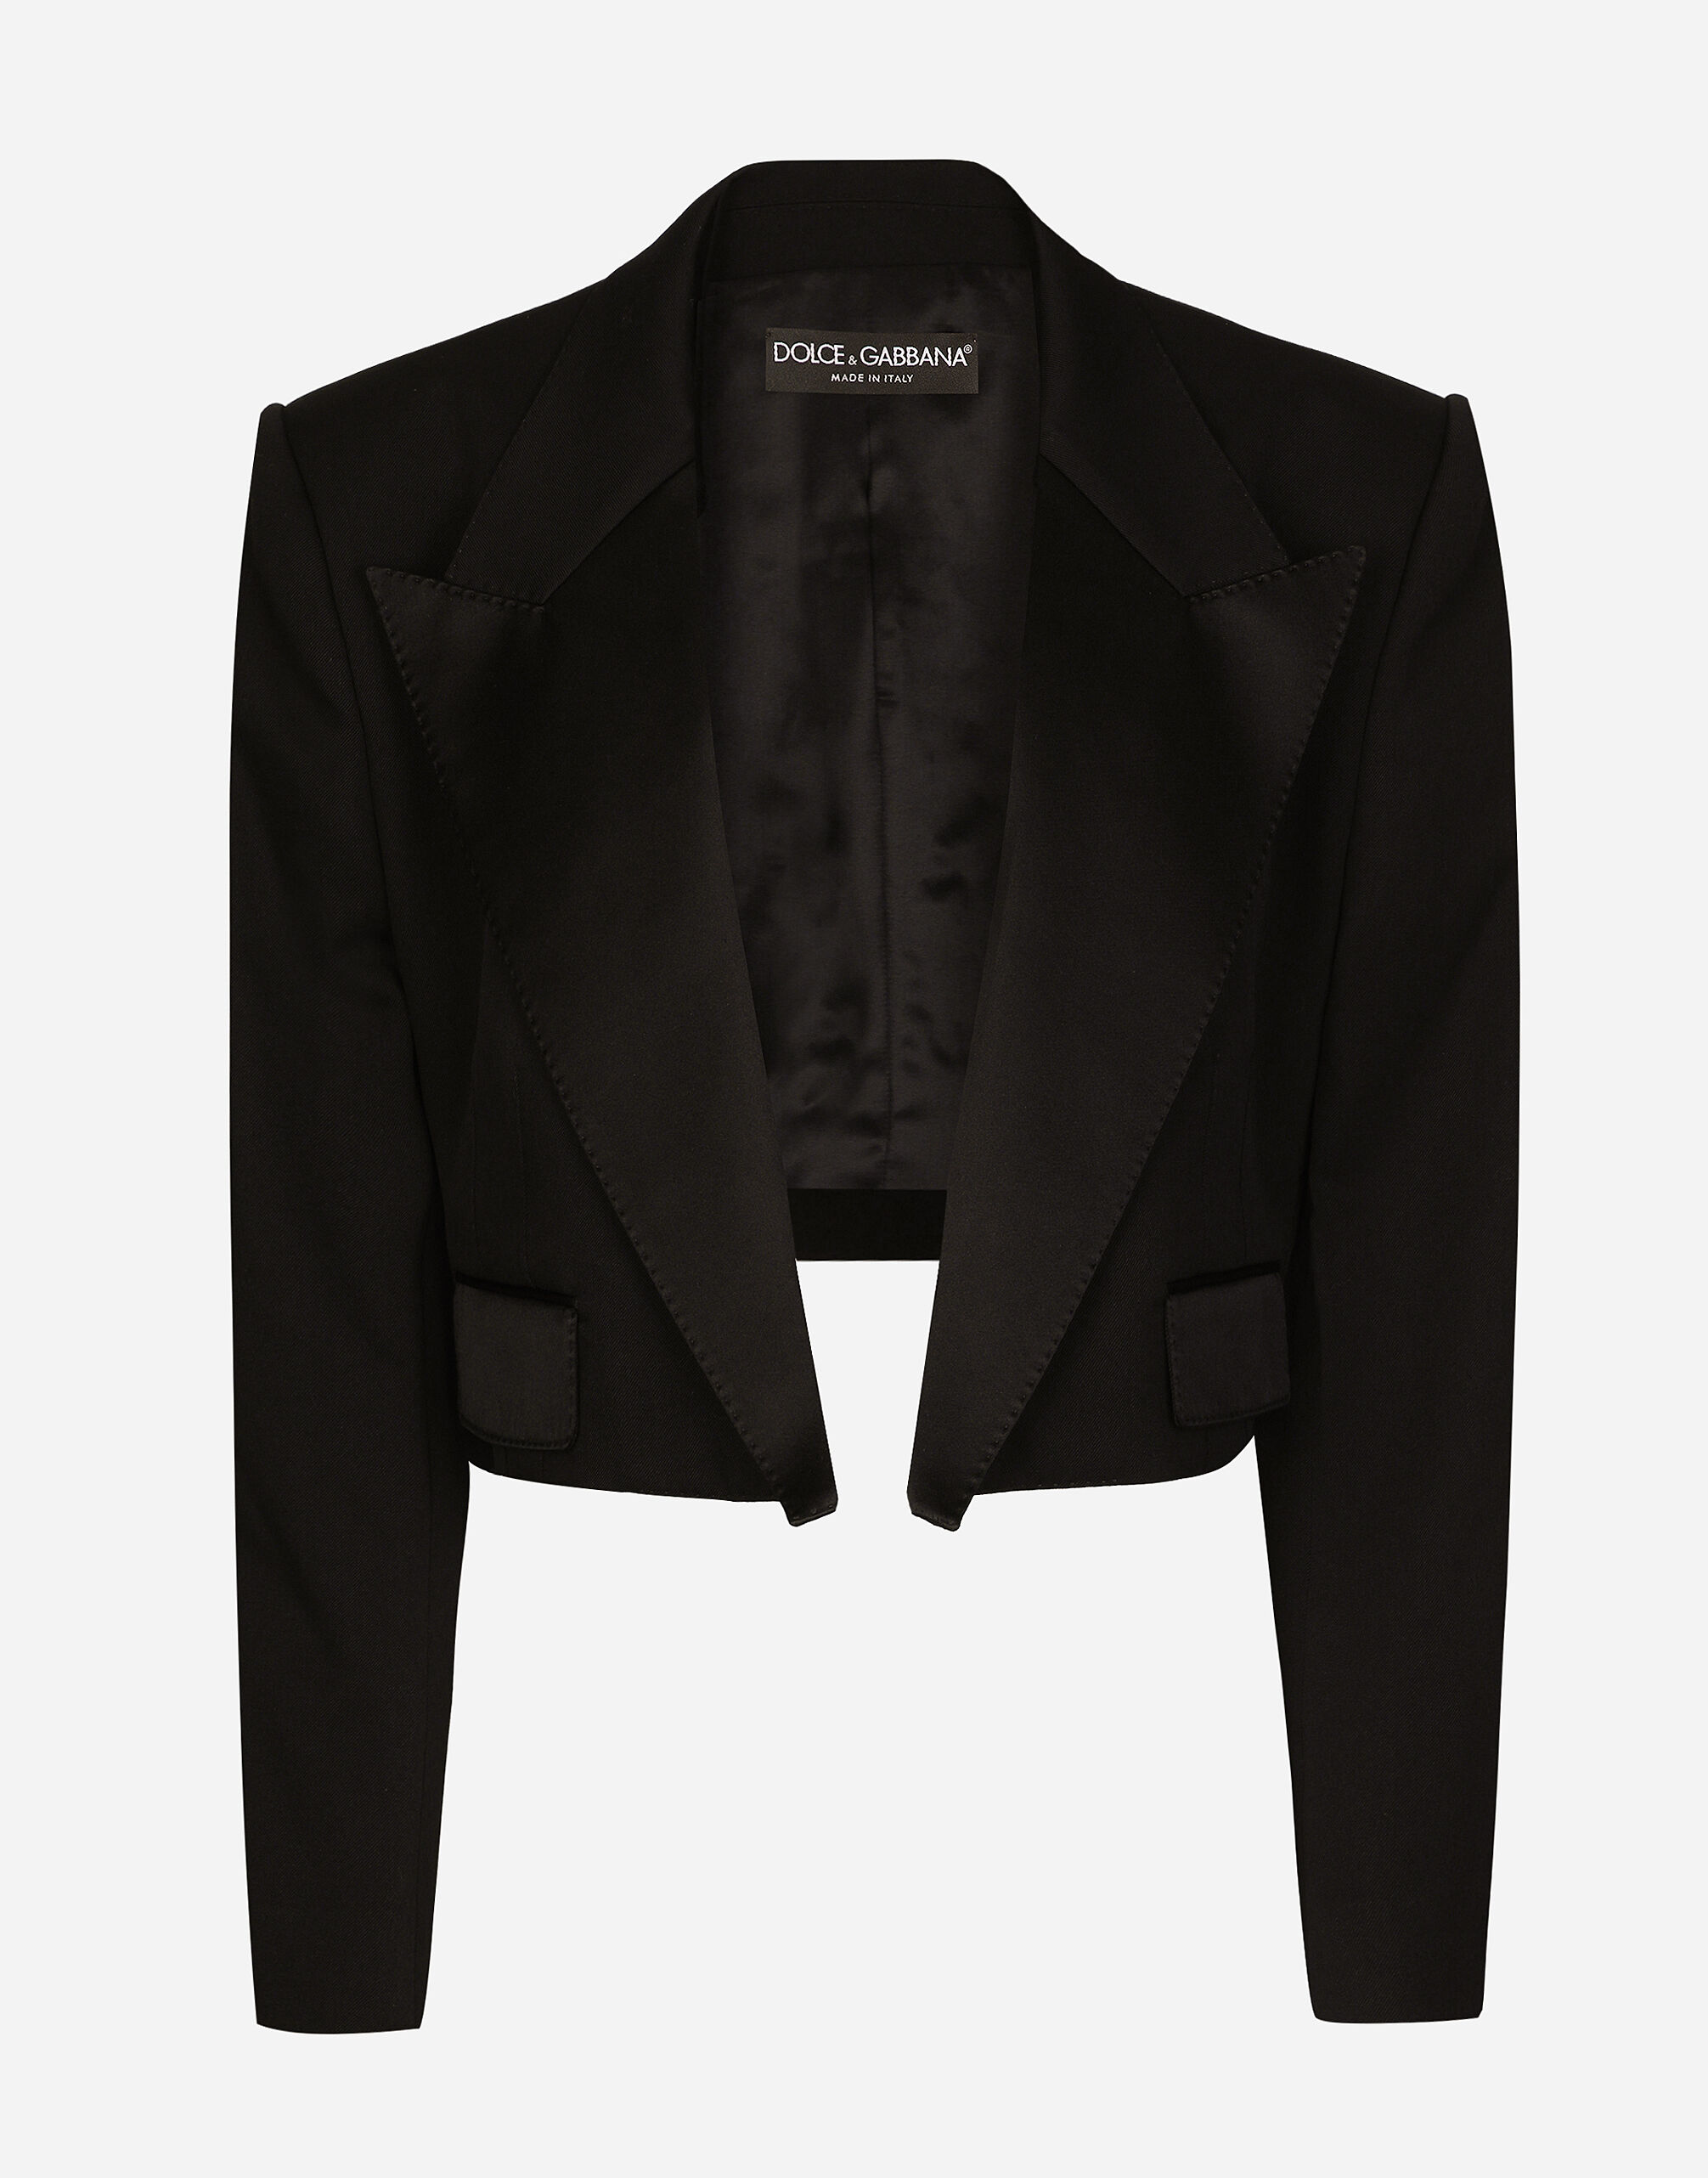 Dolce & Gabbana Wool gabardine Spencer tuxedo jacket Print FN093RGDAWW